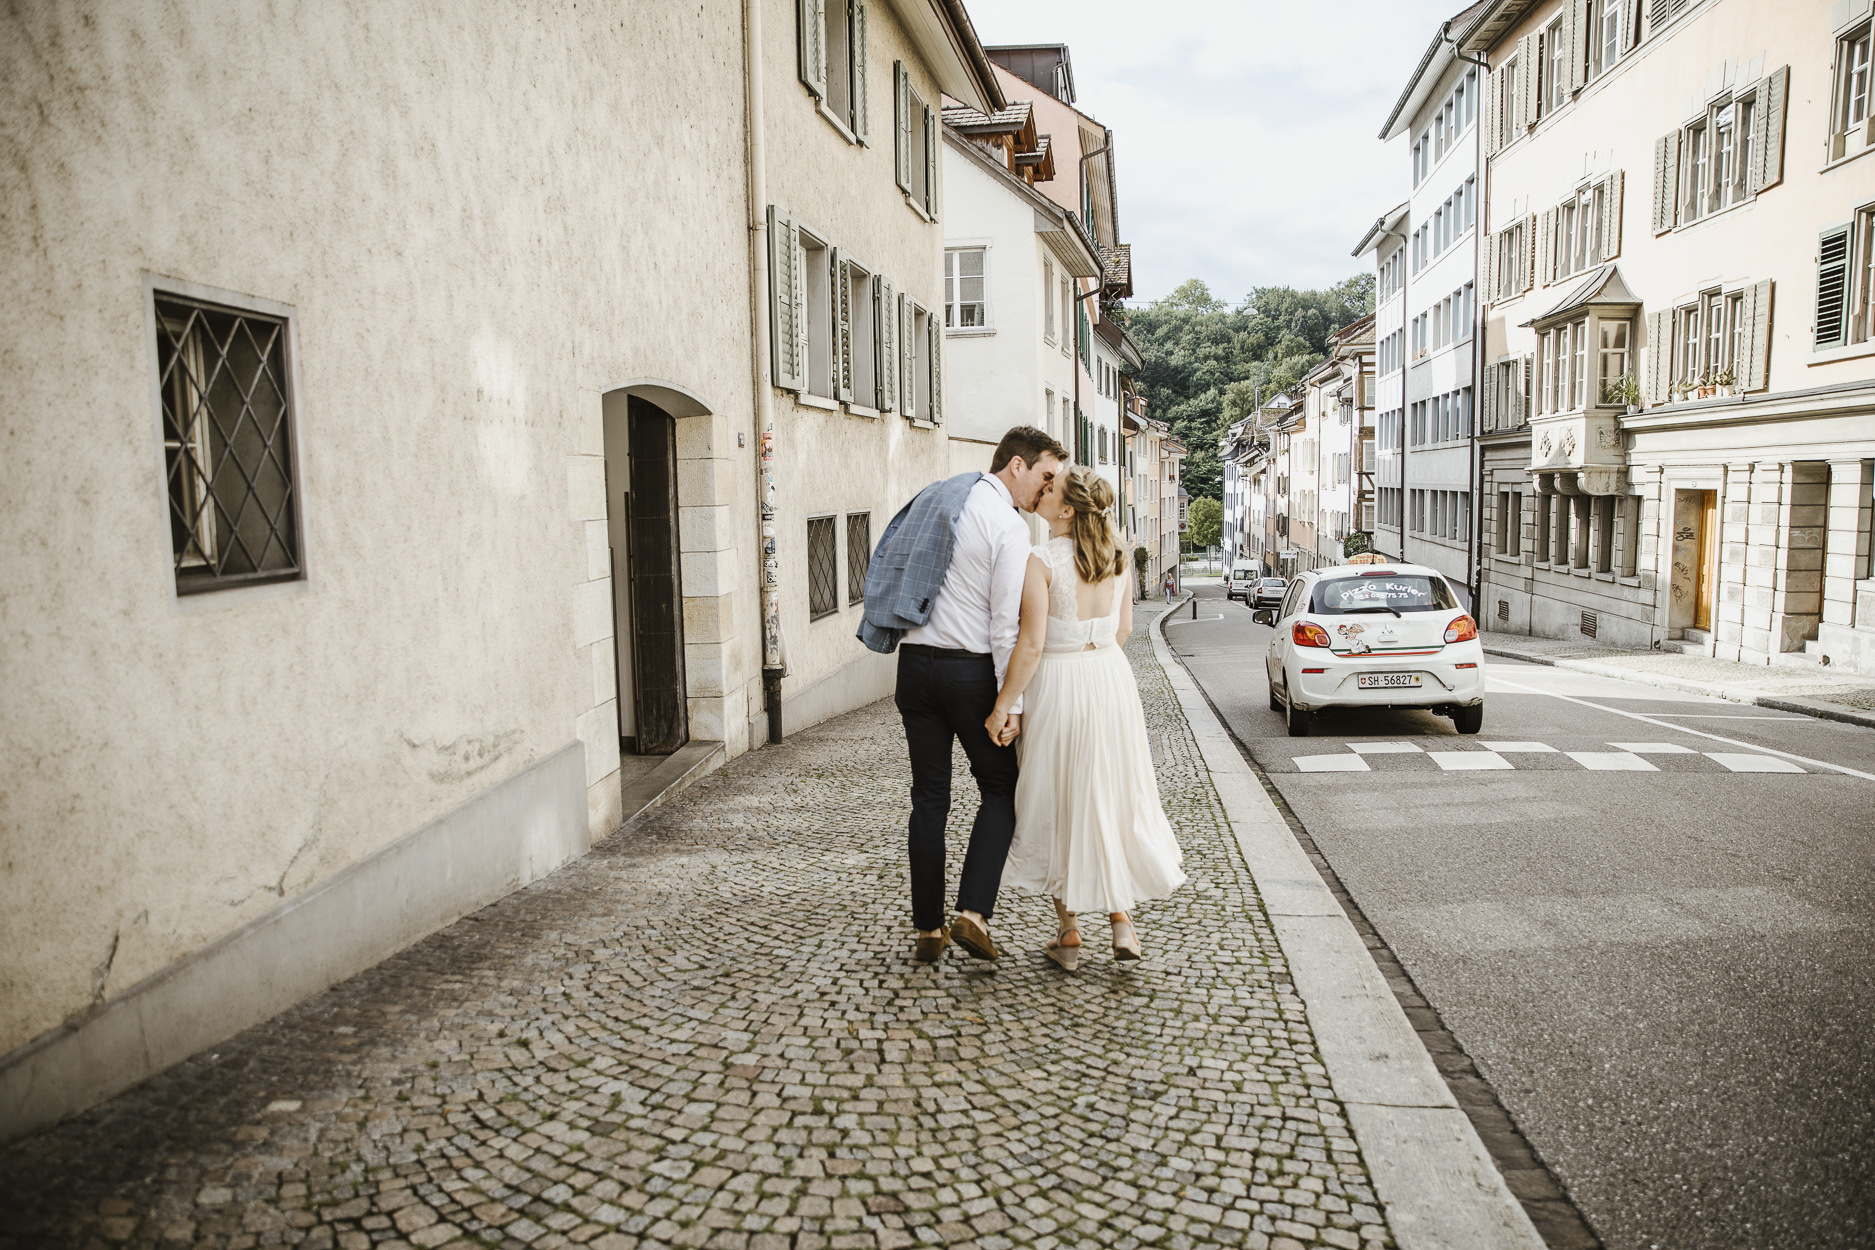 Brautpaarshoot in der Altstadt von Schaffhausen